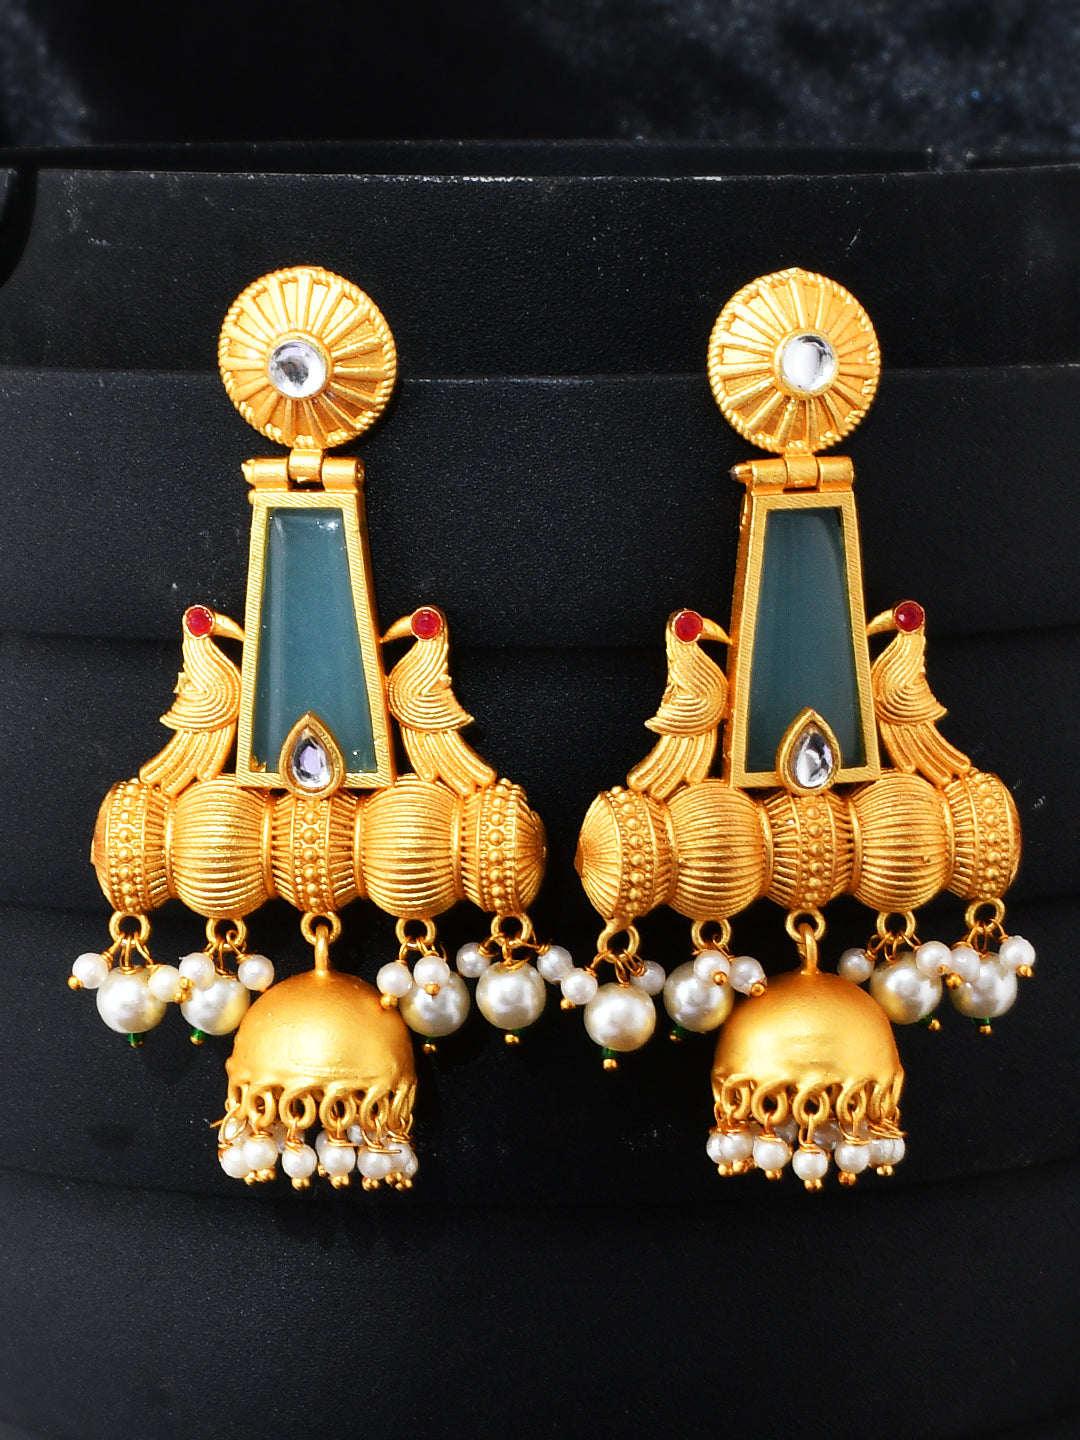 Beautiful Latest Stylish Jhumka & Earrings Design Images dpz | Wallpaper DP  | Jhumka earrings, Designer earrings, Earrings